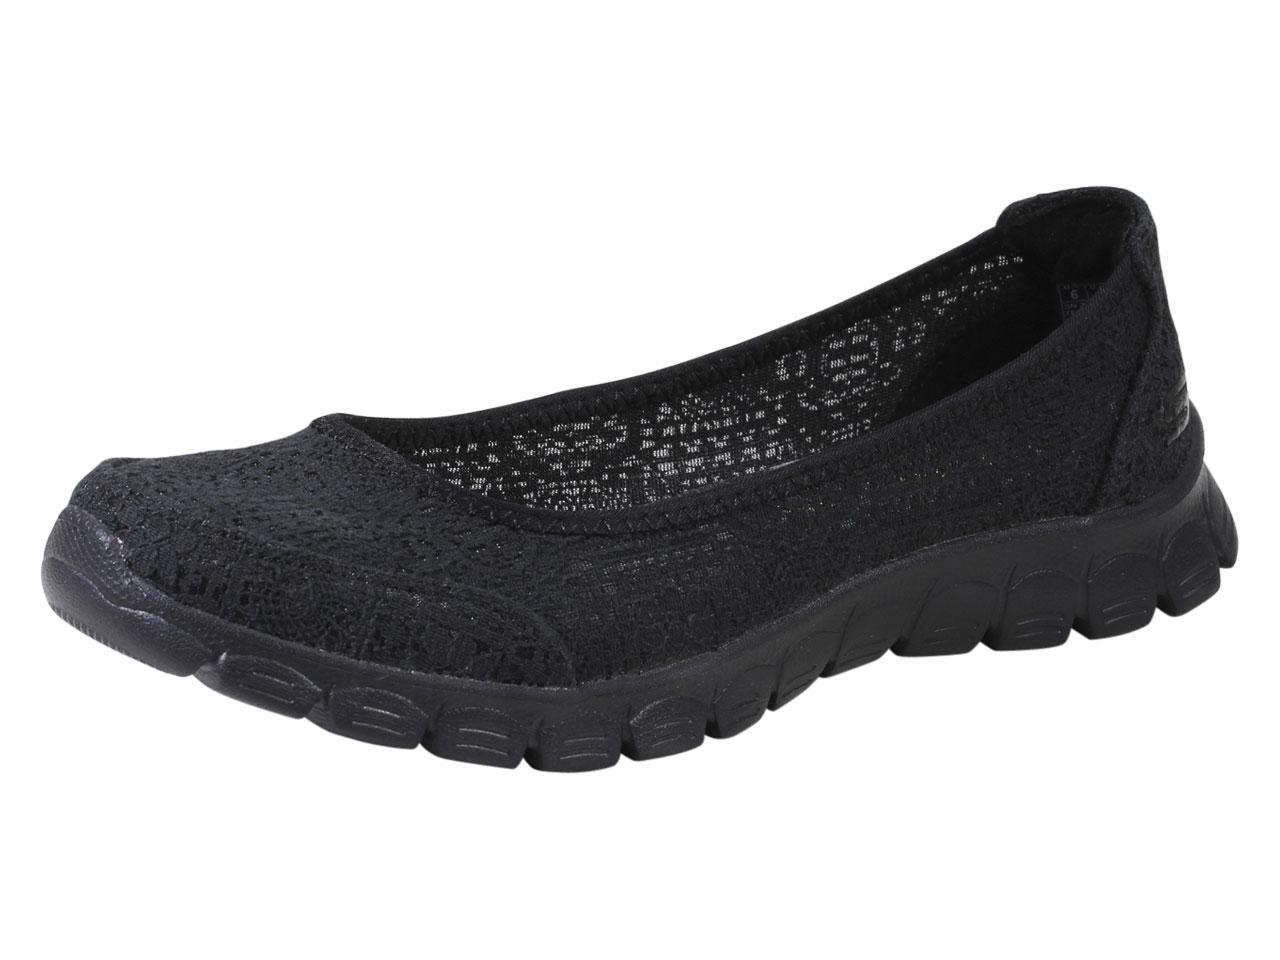 Skechers Women's EZ Flex 3.0 Beautify Memory Foam Loafers Shoes - Black - 8.5 B(M) US